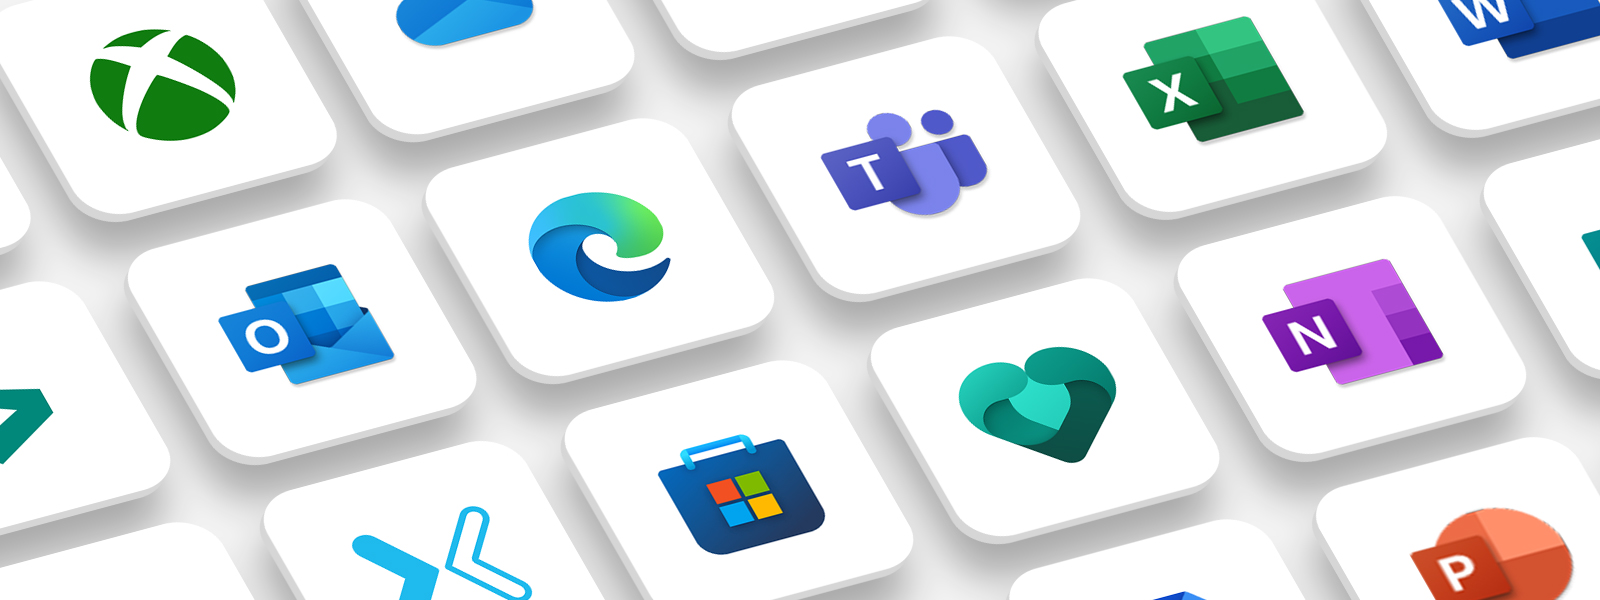 白色背景上的许多彩色 Microsoft 应用程序徽标